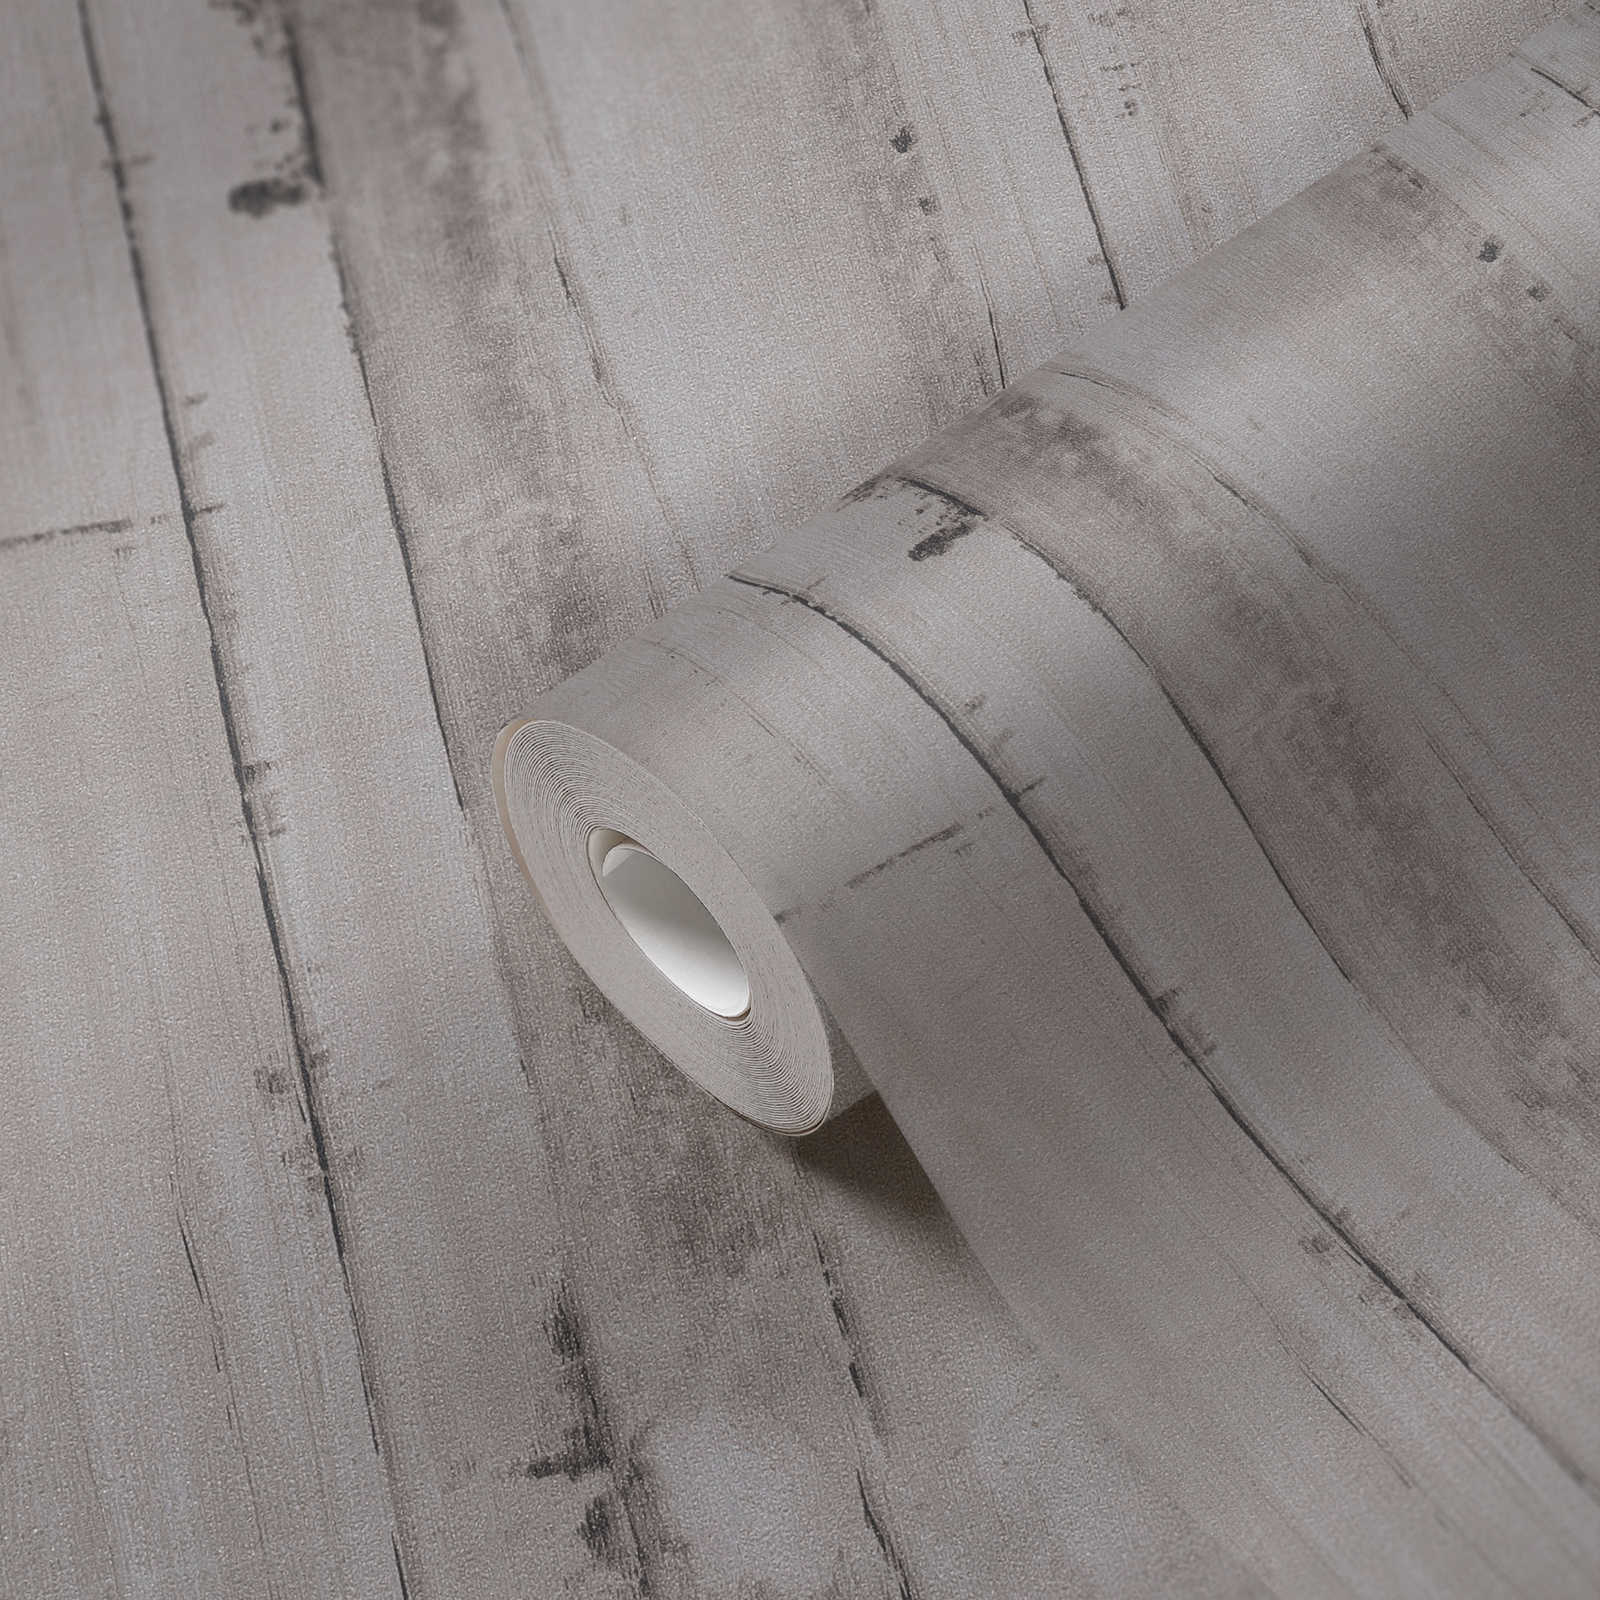             Papel pintado no tejido con aspecto de madera sin PVC - gris
        